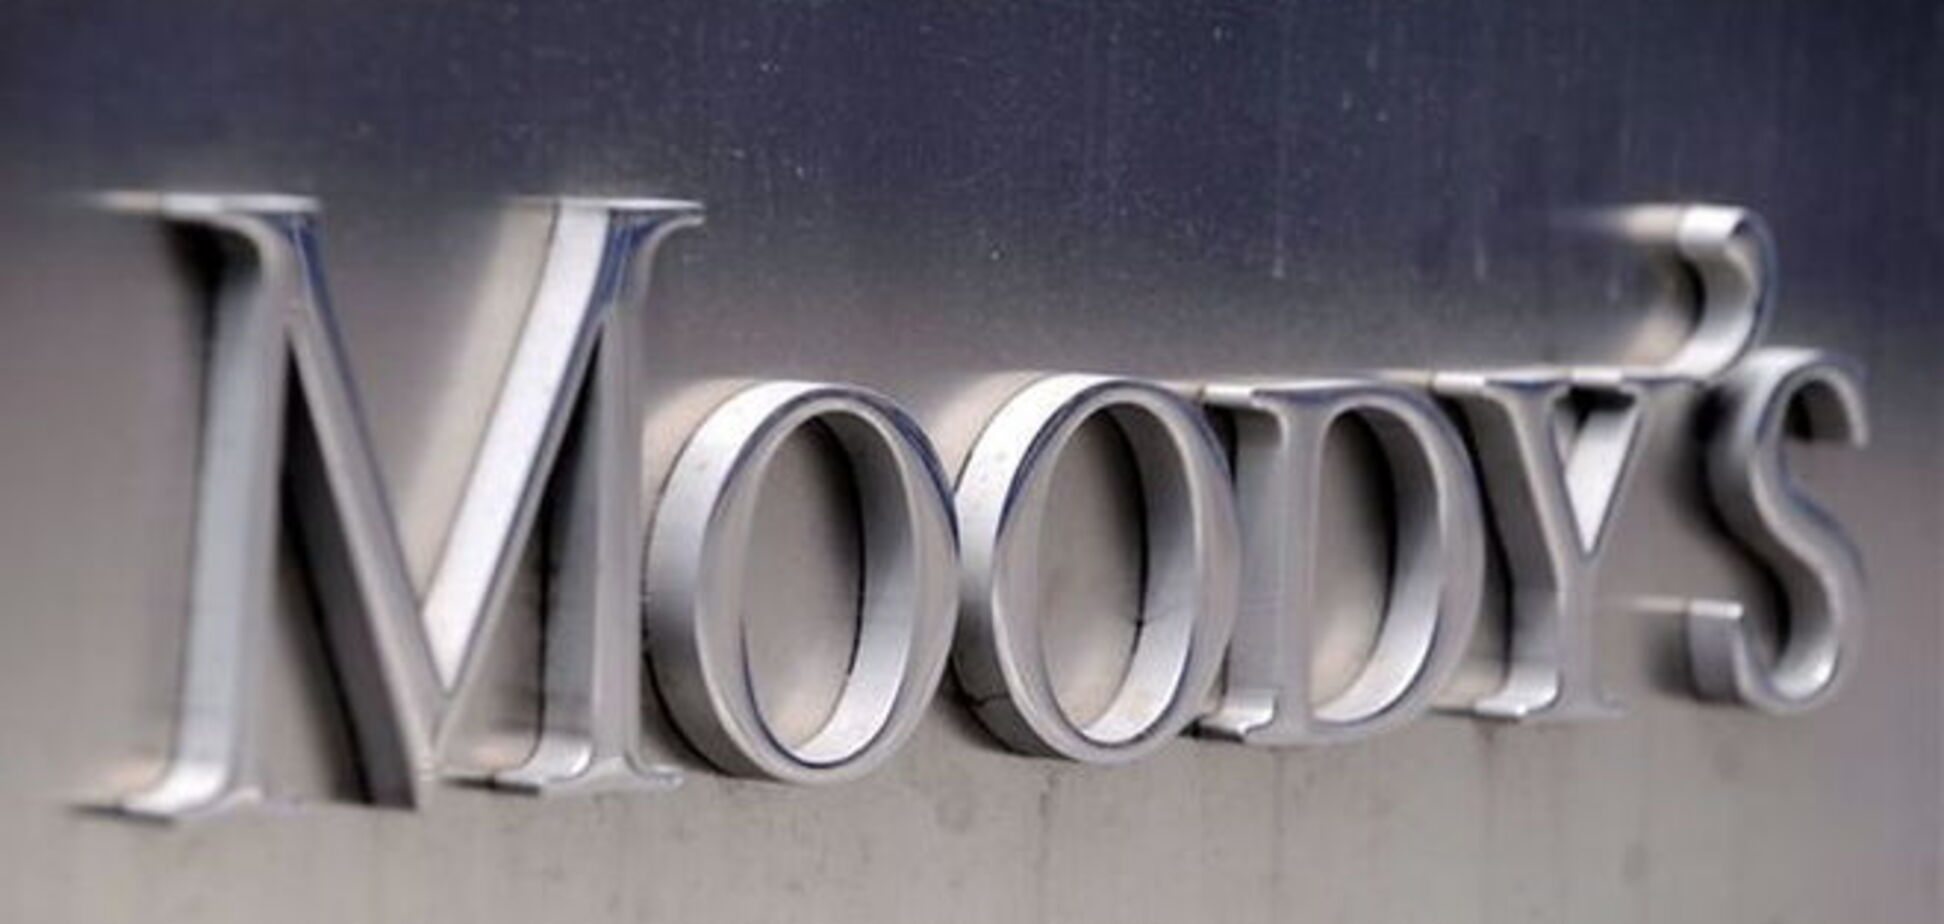 Розслаблятися рано: в Moody's назвали нову дату дефолту України